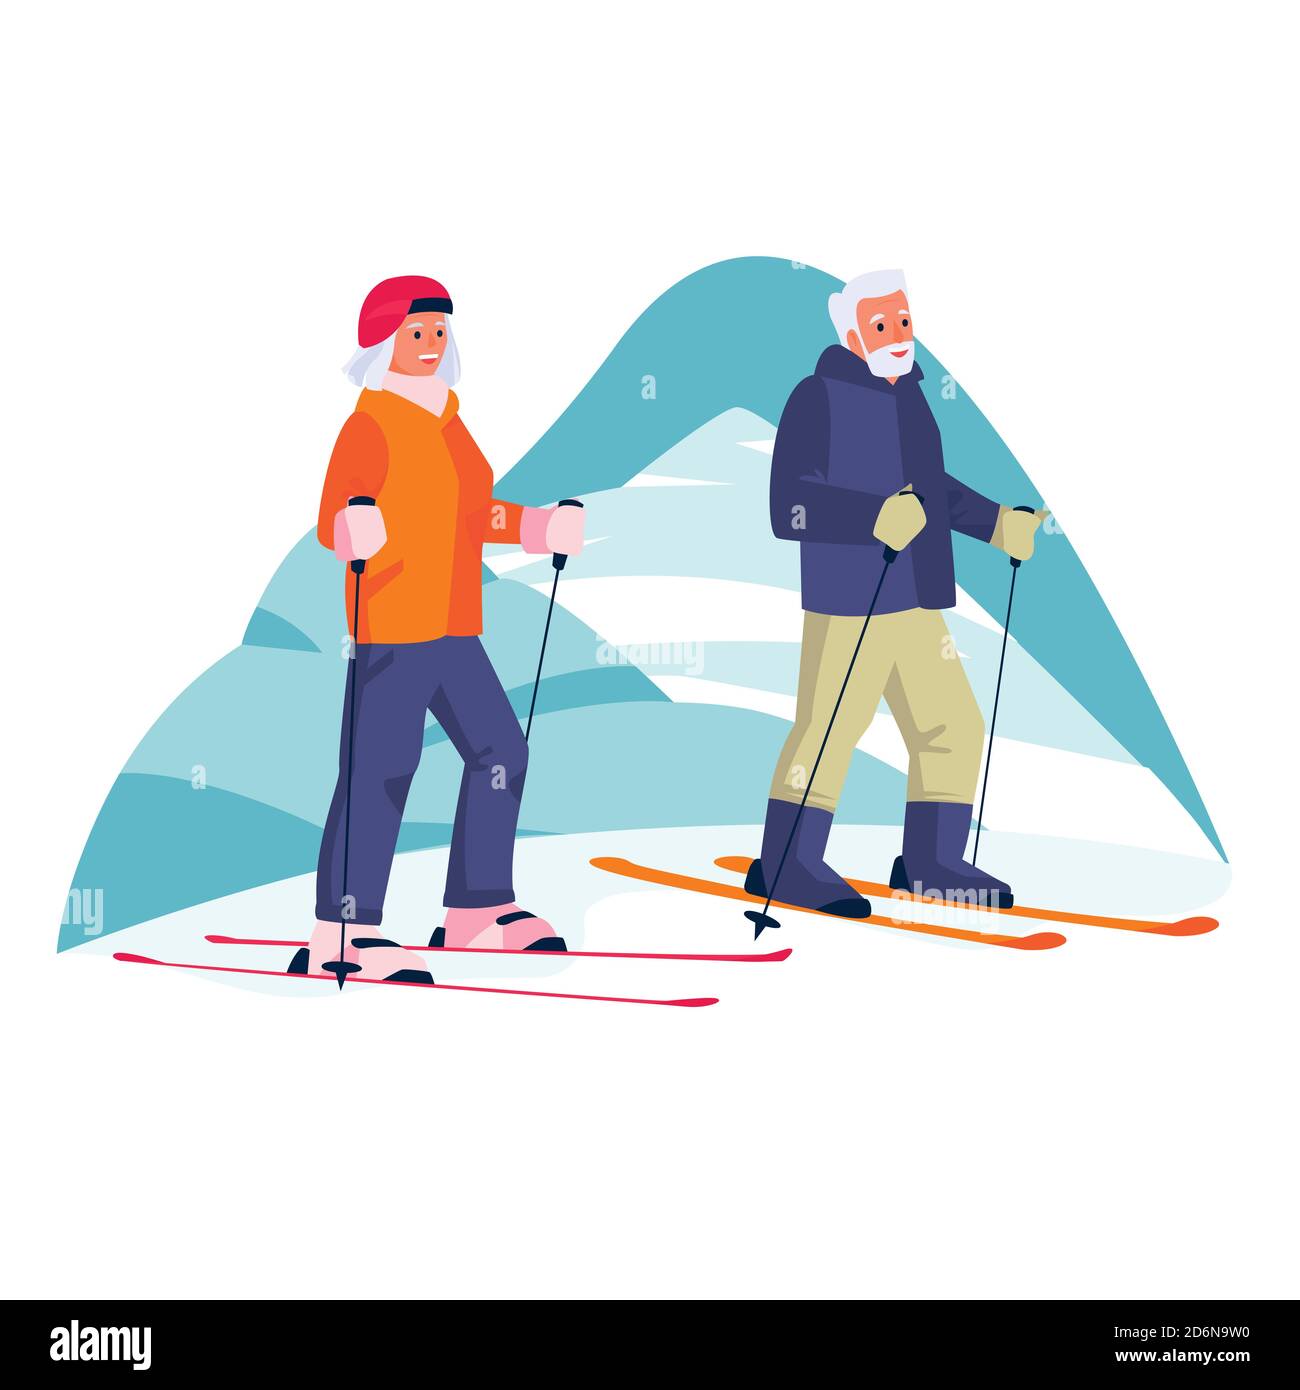 Ältere Paare Skifahren in den Bergen. Vector flache Cartoon Illustration der Winter Outdoor Freizeit. Konzept der aktiven gesunden Lebensweise der Senioren. Stock Vektor